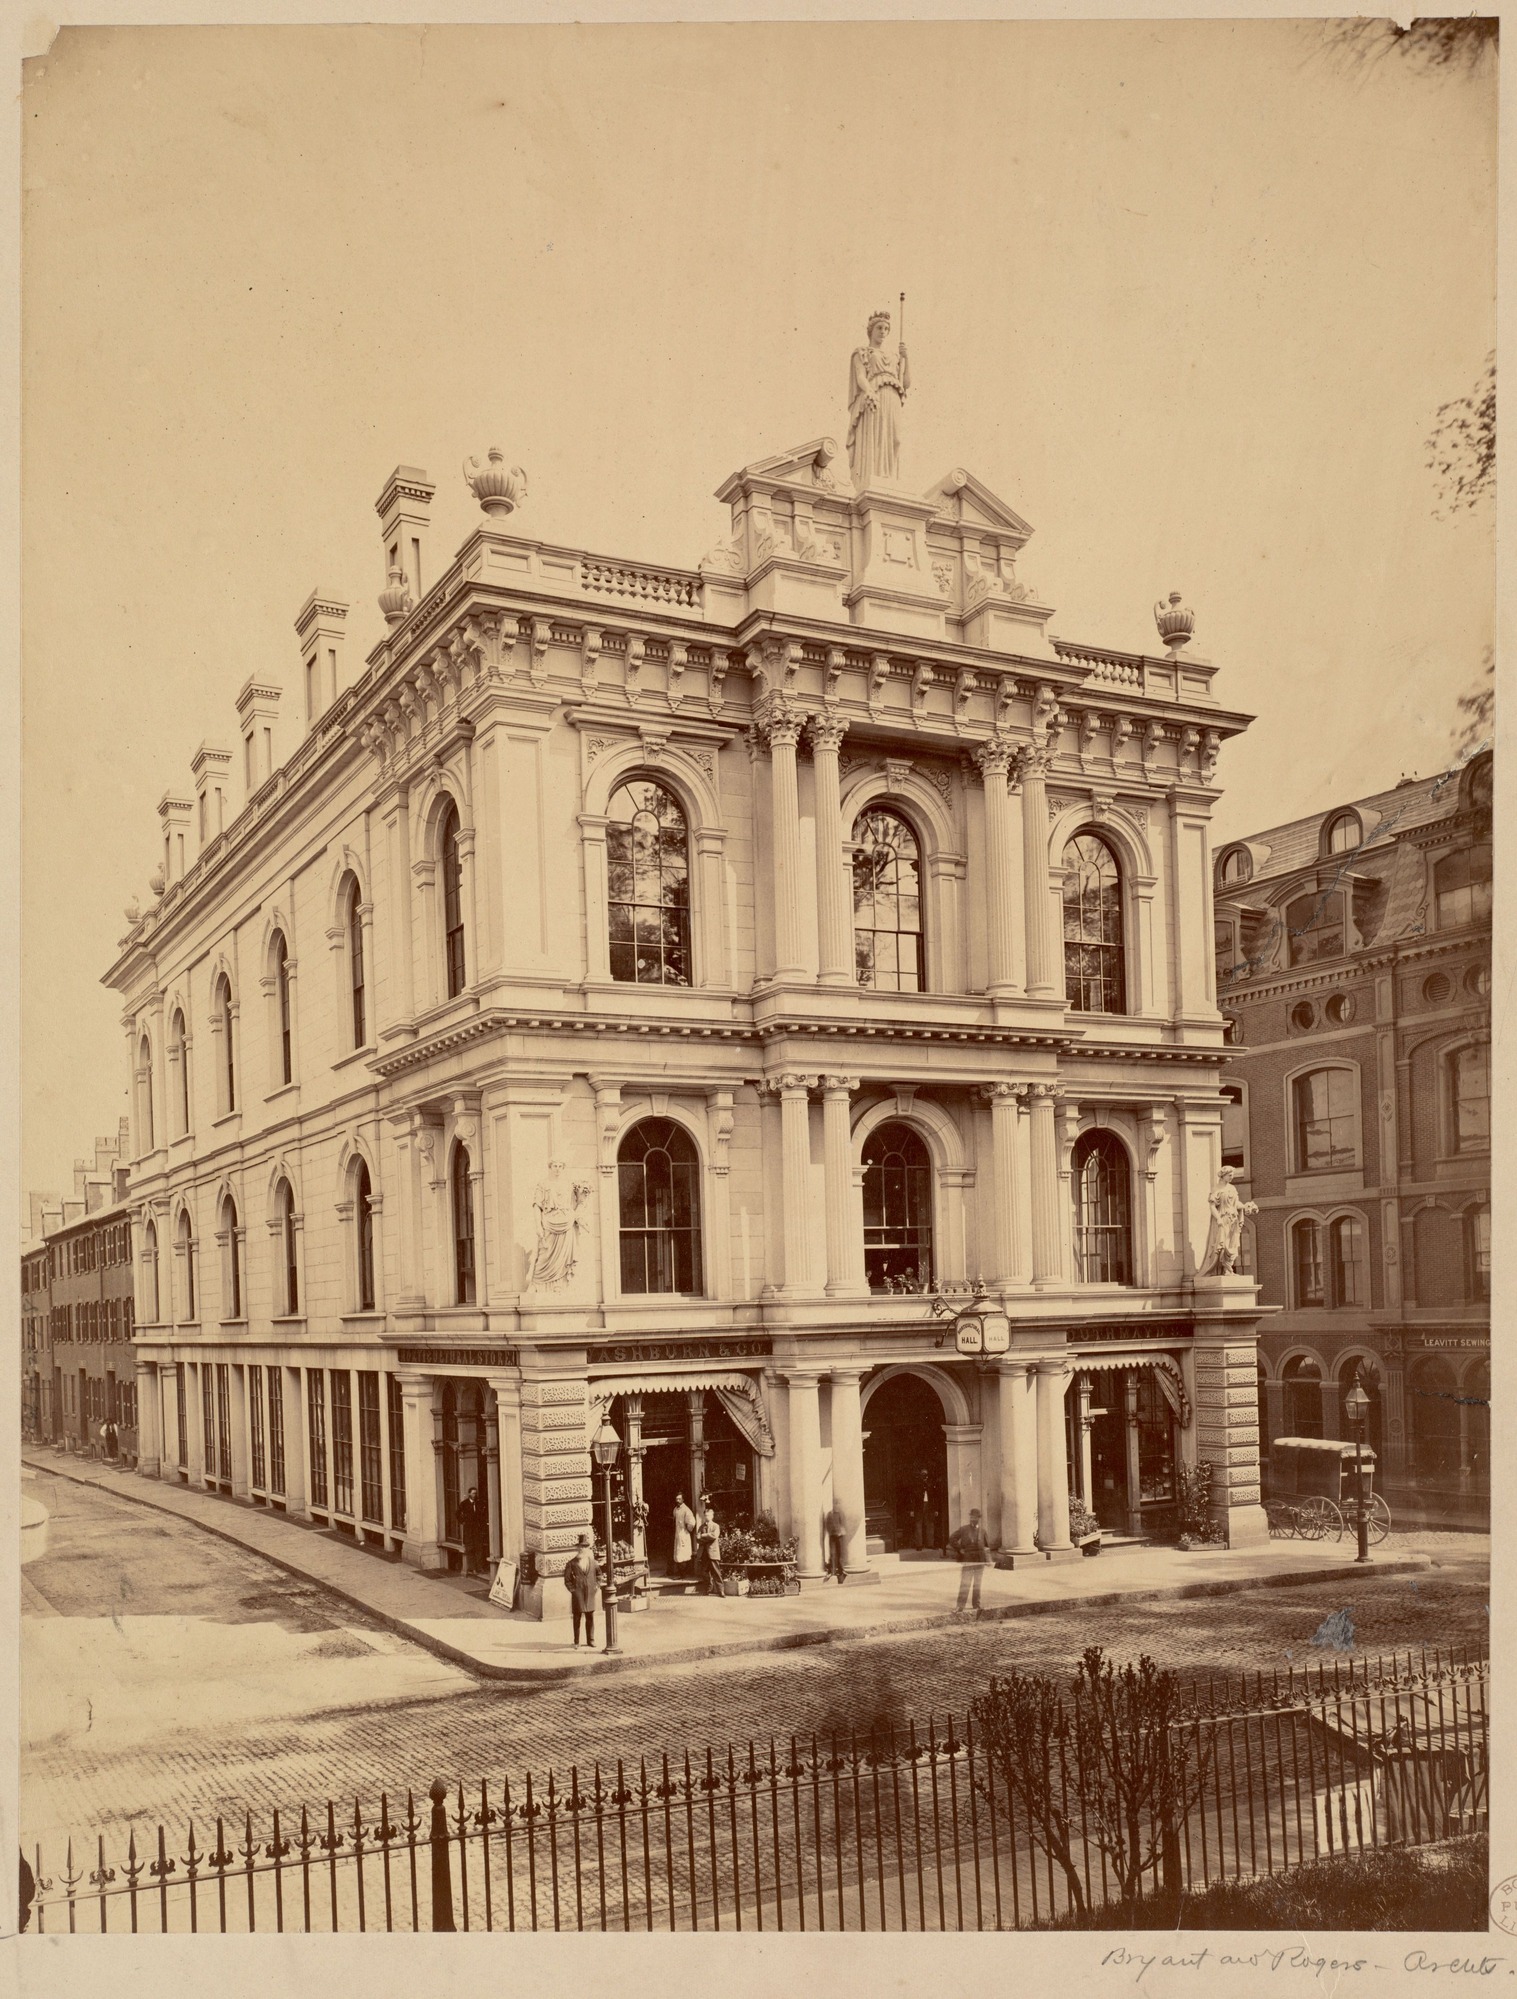 Horticultural Hall facade, ca. 1870-1889.